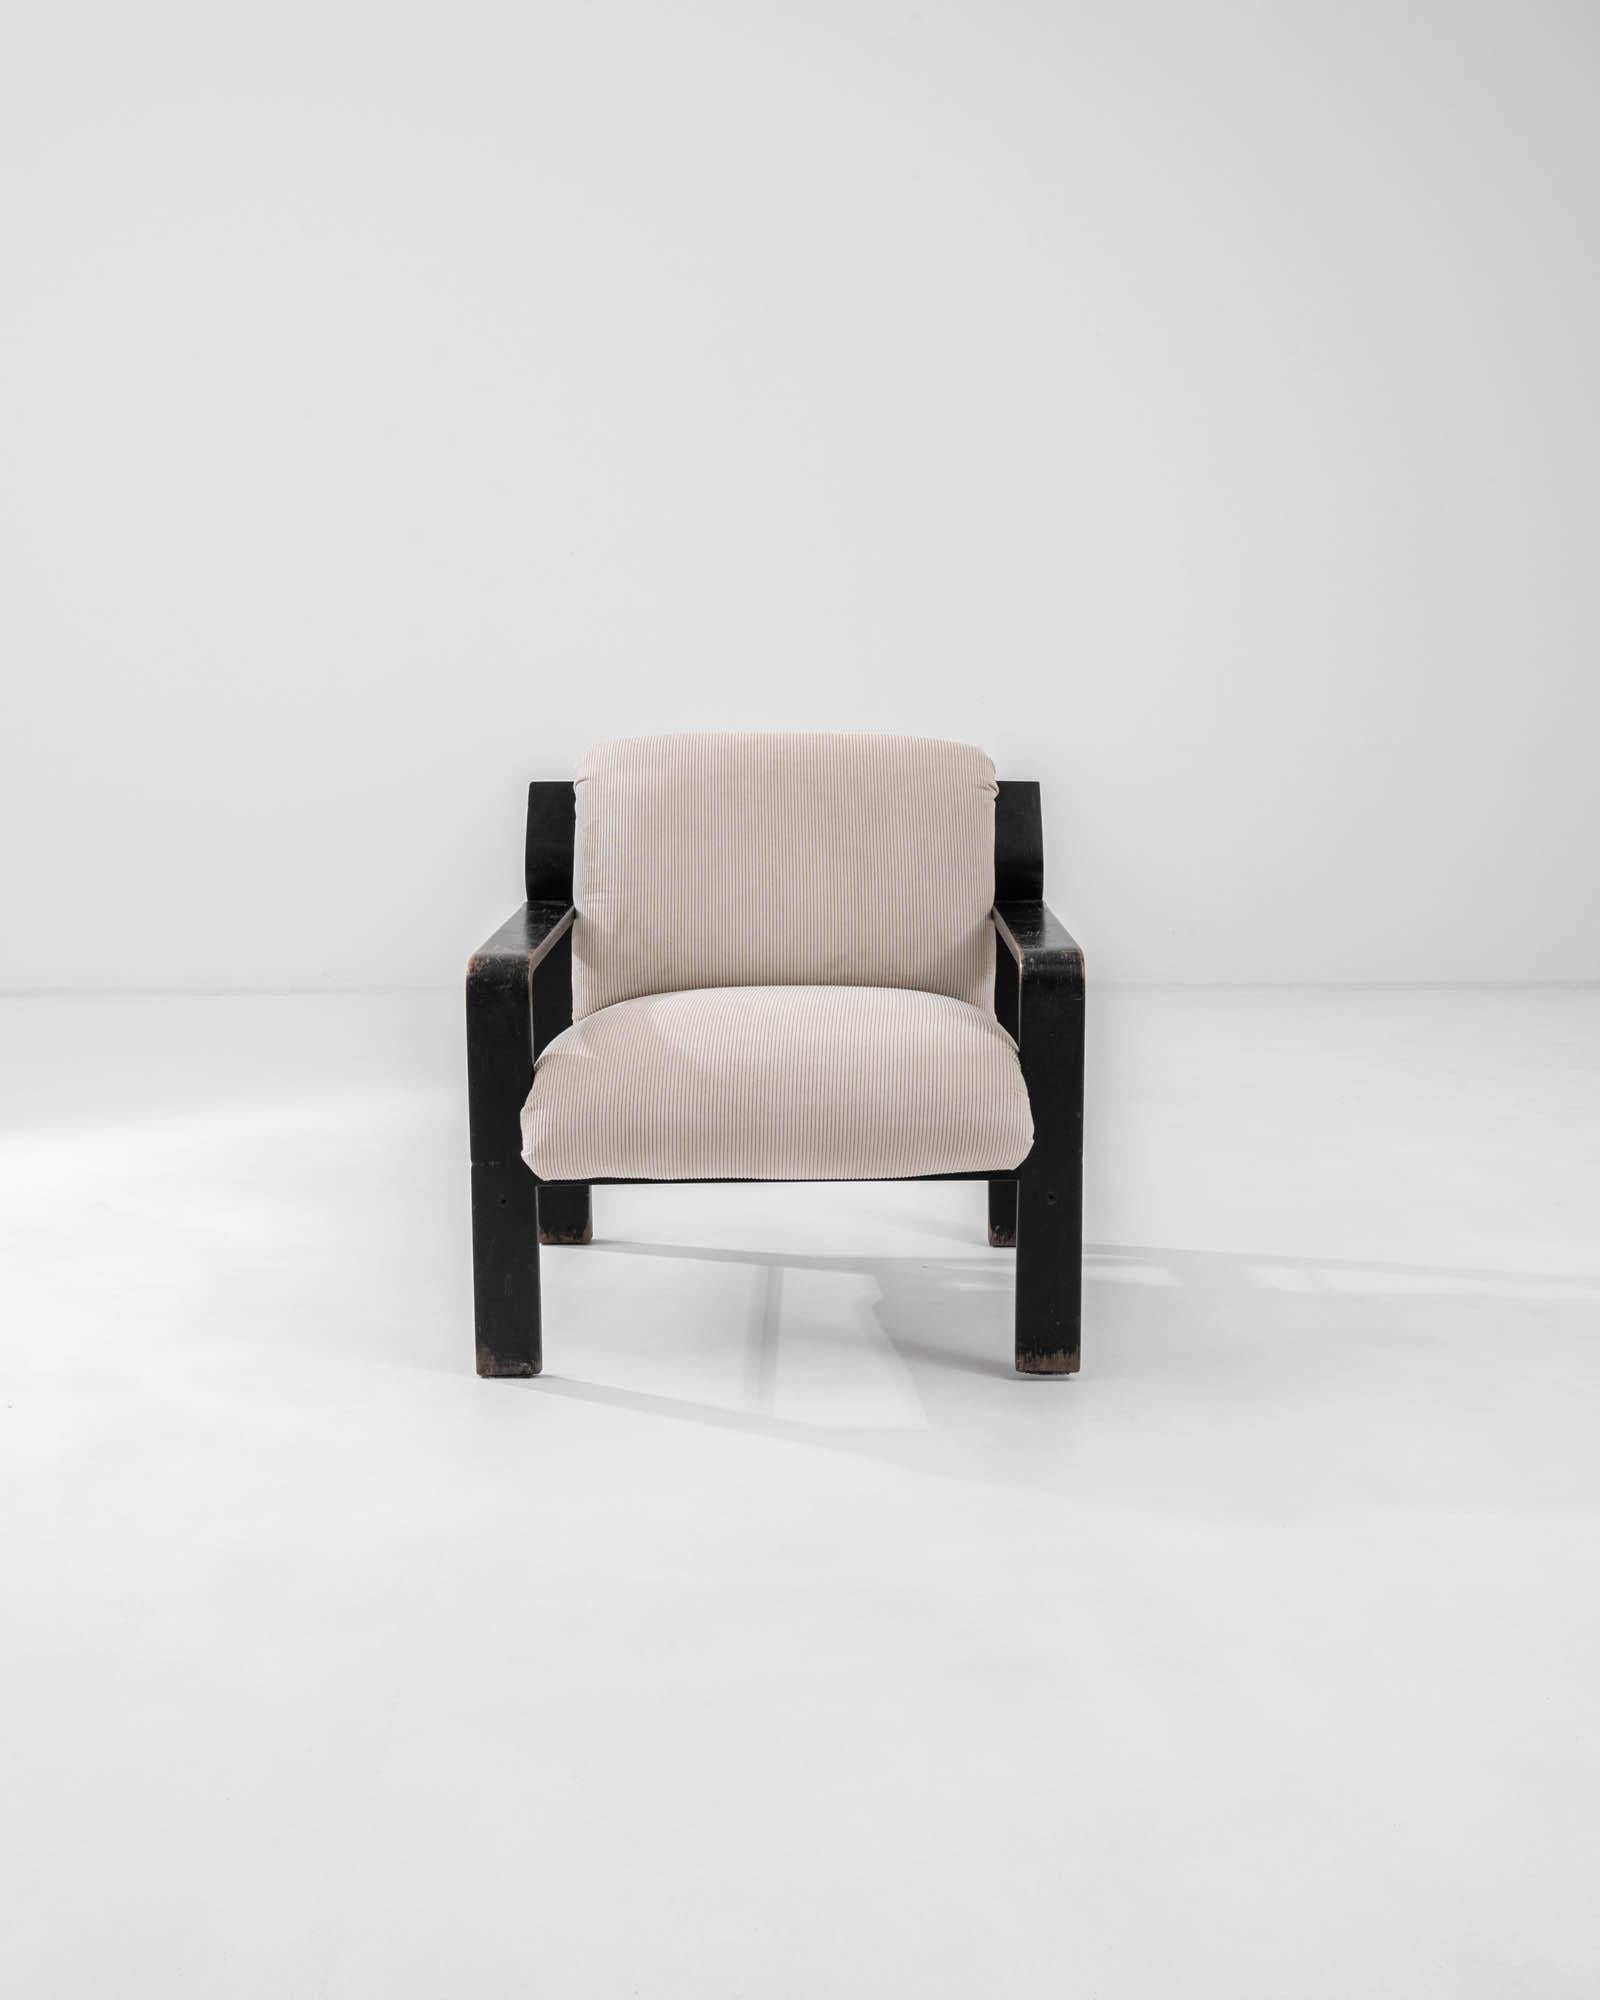 Cet excellent fauteuil tchèque moderne du milieu du siècle, conçu dans les années 1960, présente une élégante base en bois en forme d'équerre définie par des lignes nettes, ce qui renforce le dynamisme visuel. Un seul coussin, revêtu d'un velours